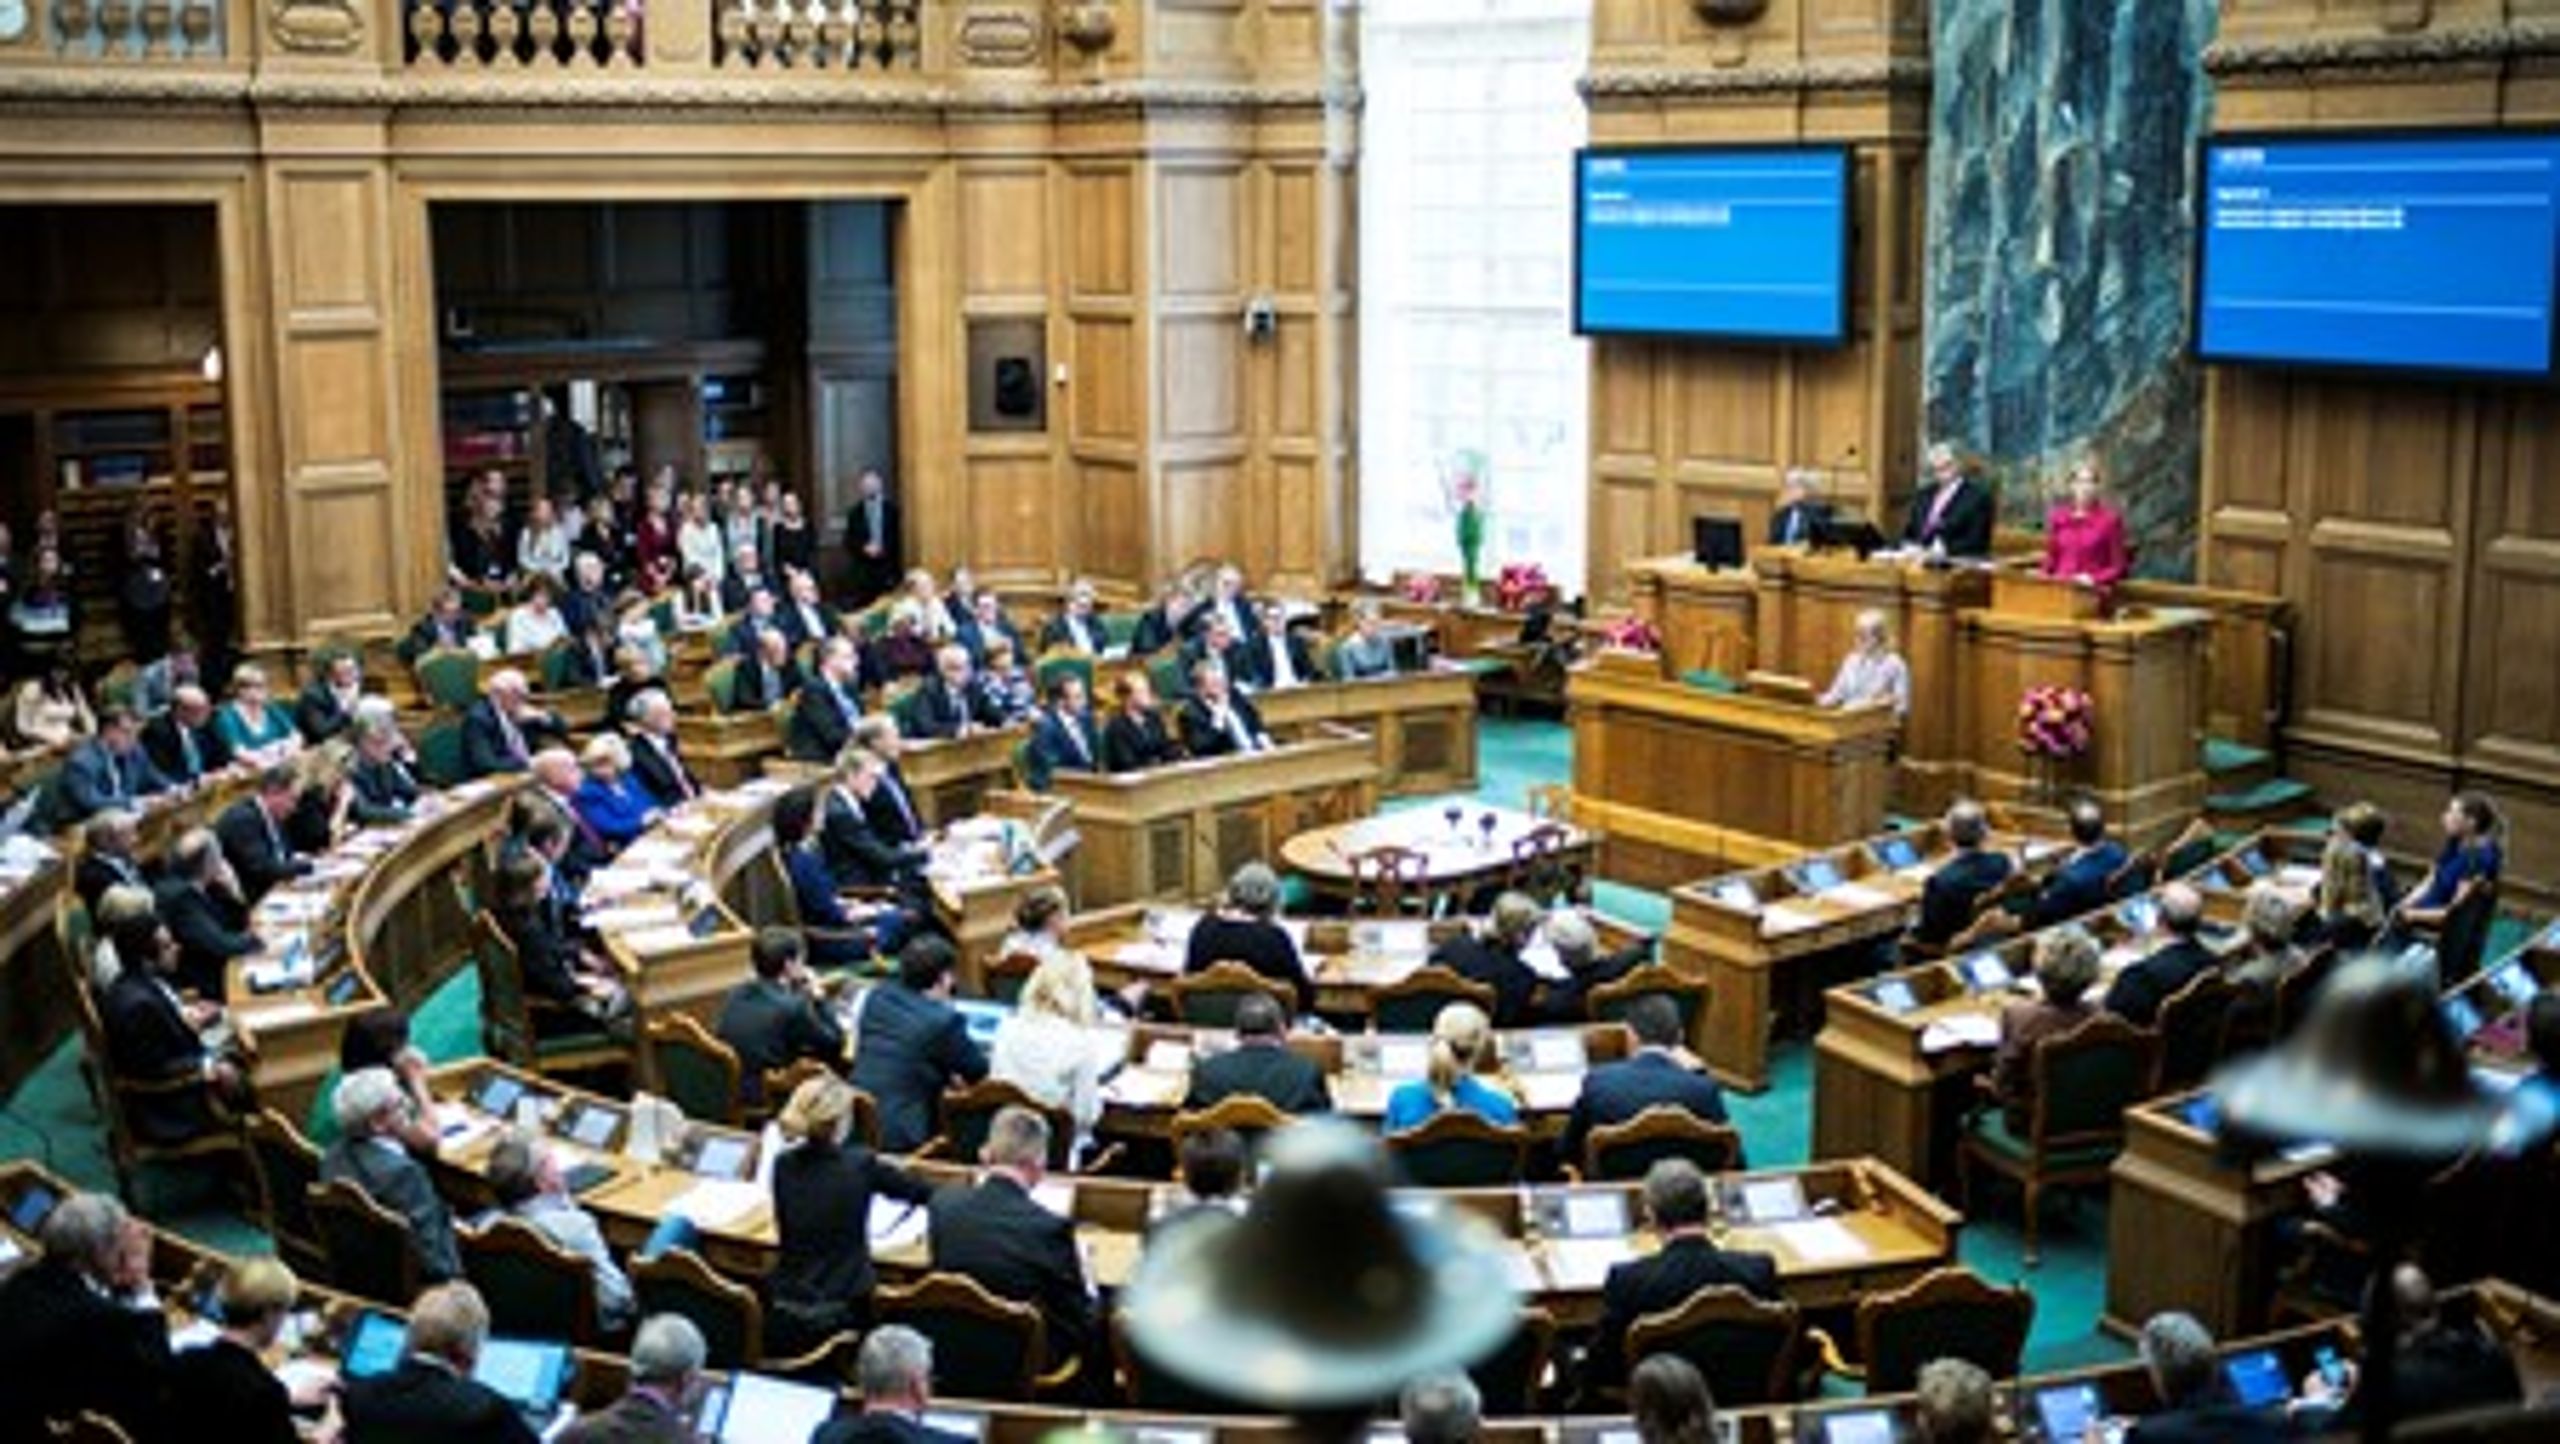 Torsdag kom regeringen i mindretal på et spørgsmål om åbenhed i&nbsp;Danmarks implementering af EU-regler.